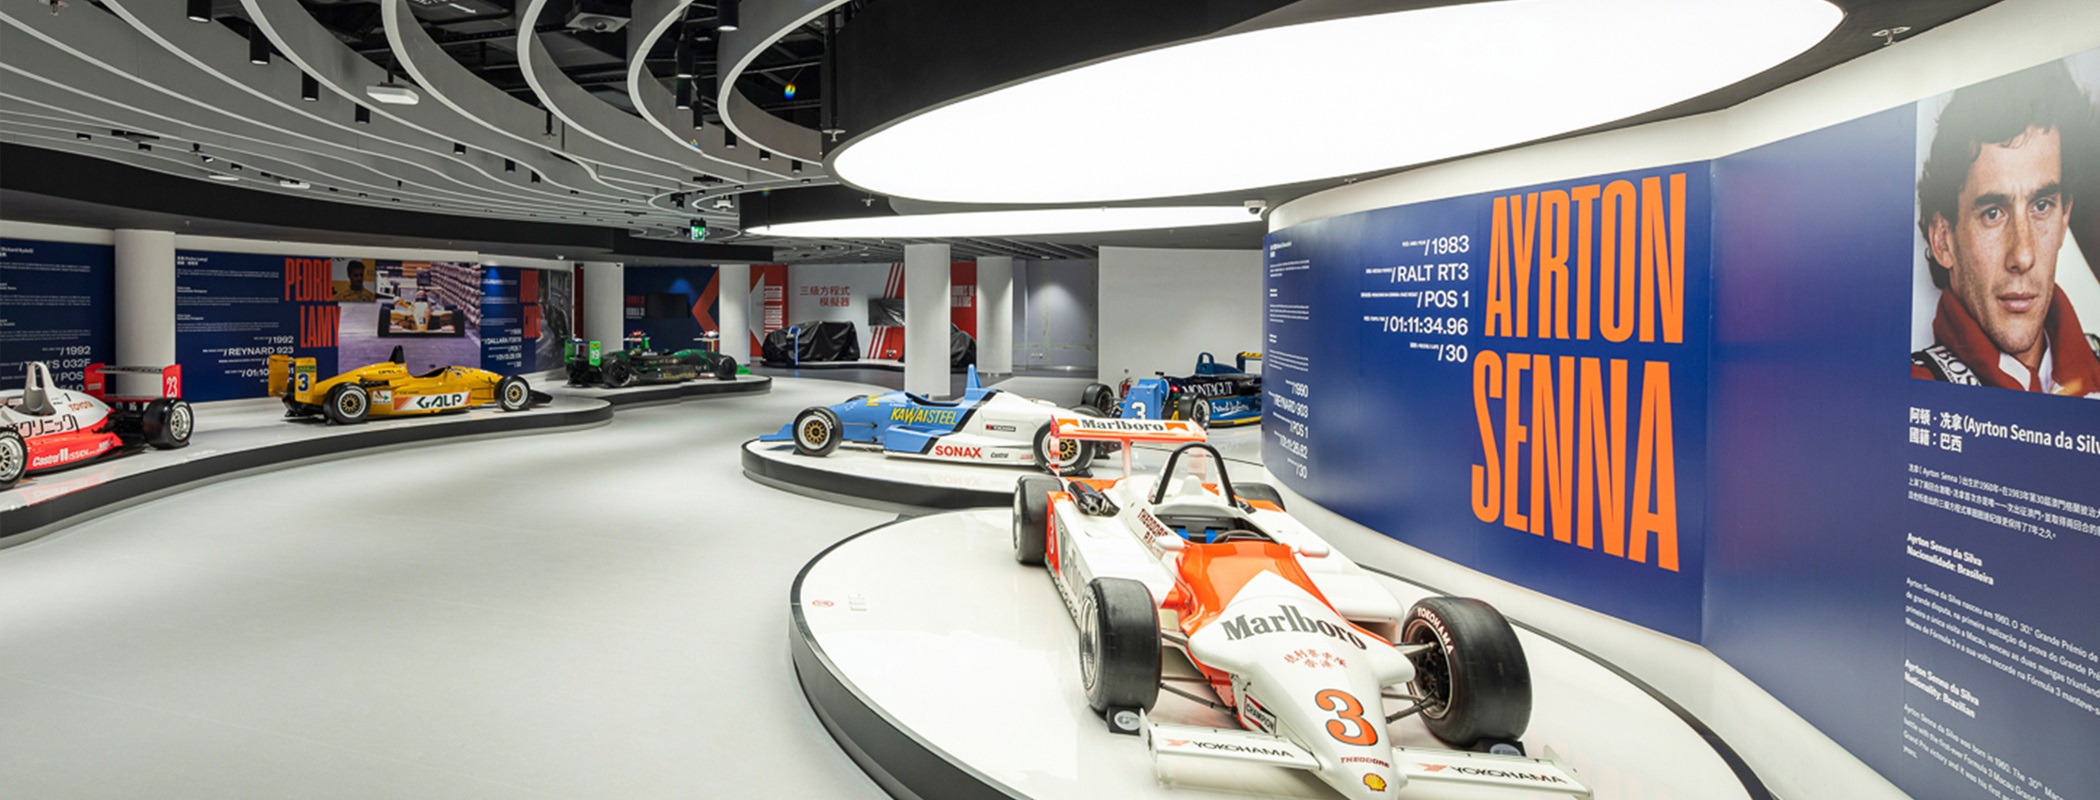 大賽車博物館